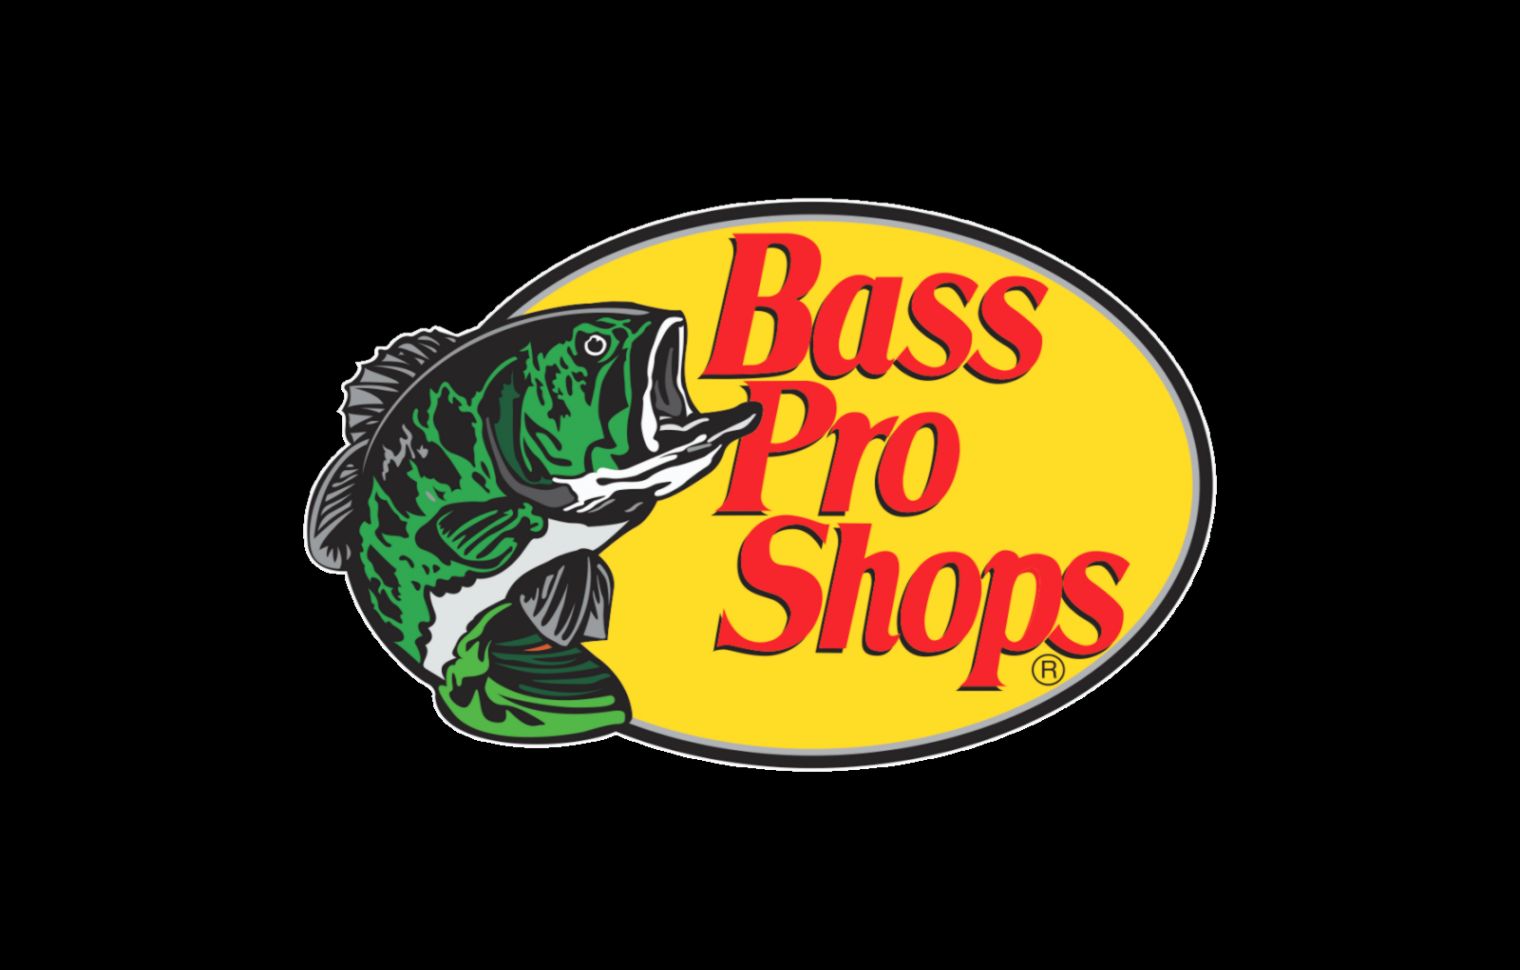 De bass. Bass Pro shops. Bass Pro басс. Логотип Bass рыбалка. Bass Pro shops футболка.